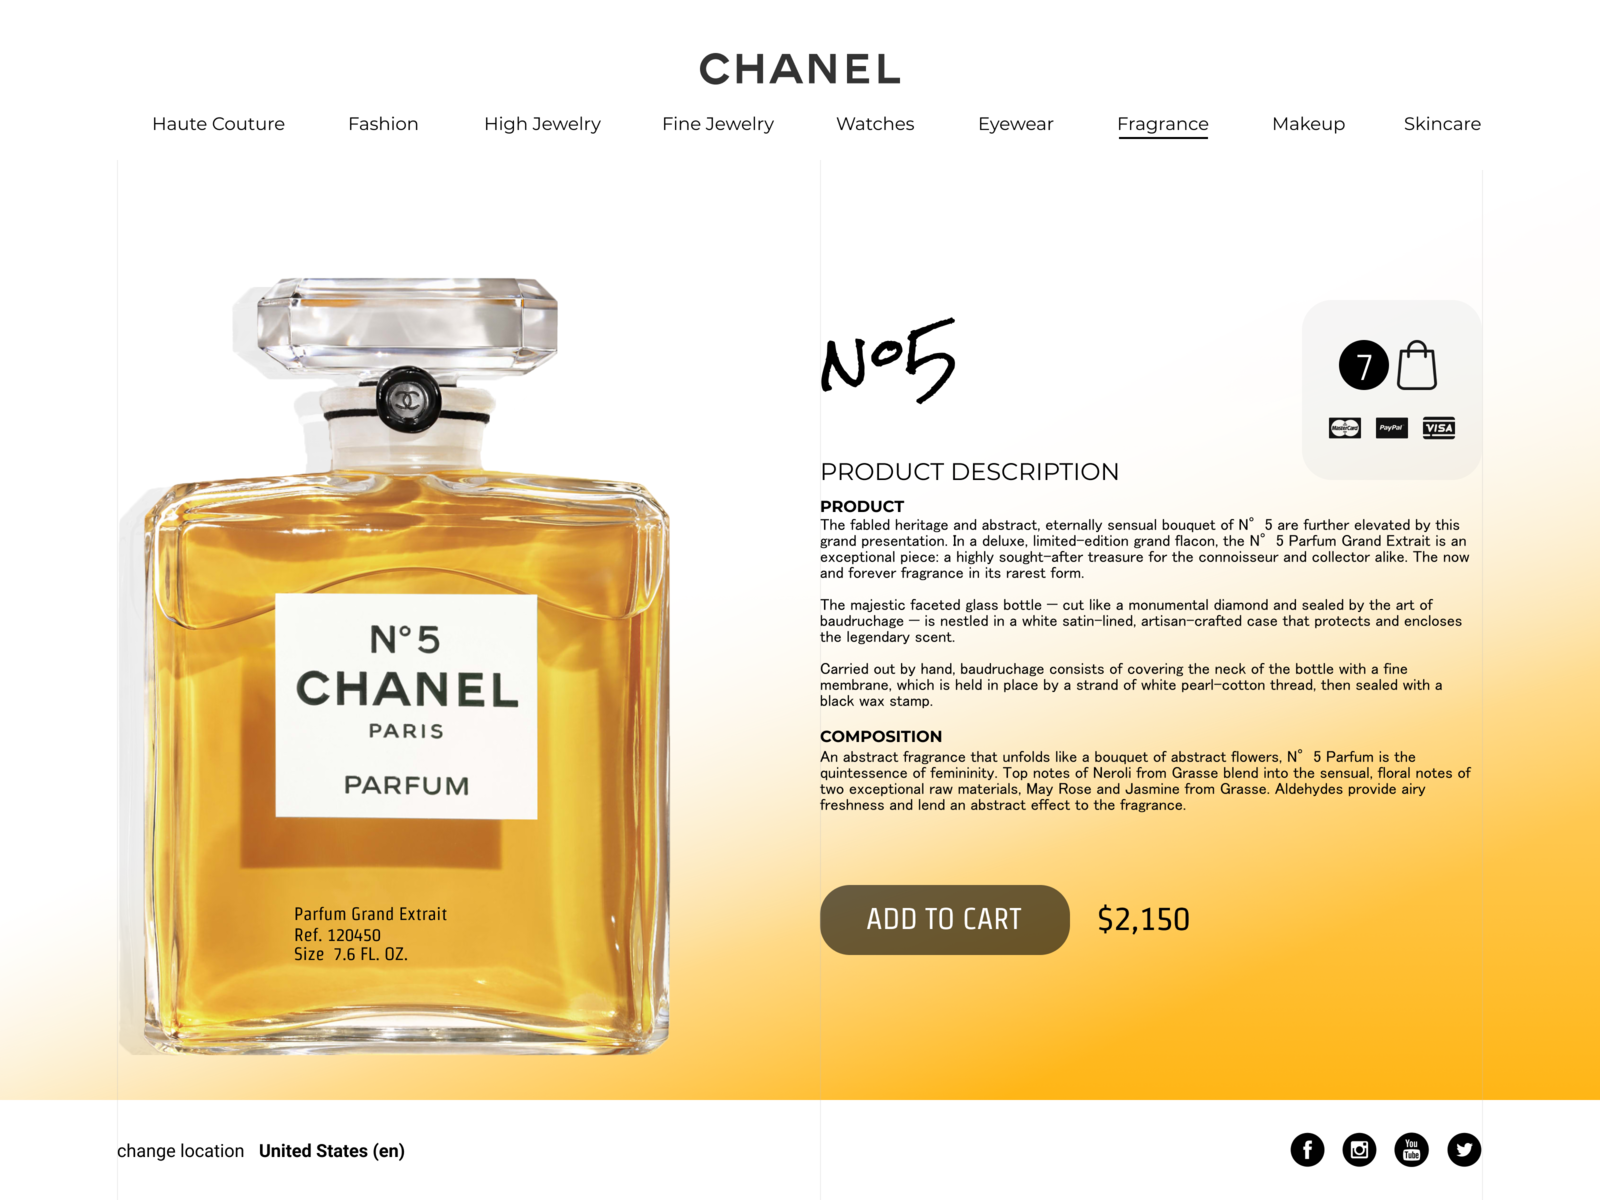 Chanel #5 Parfum Grand Extrait by Ilya Mikhnyuk on Dribbble